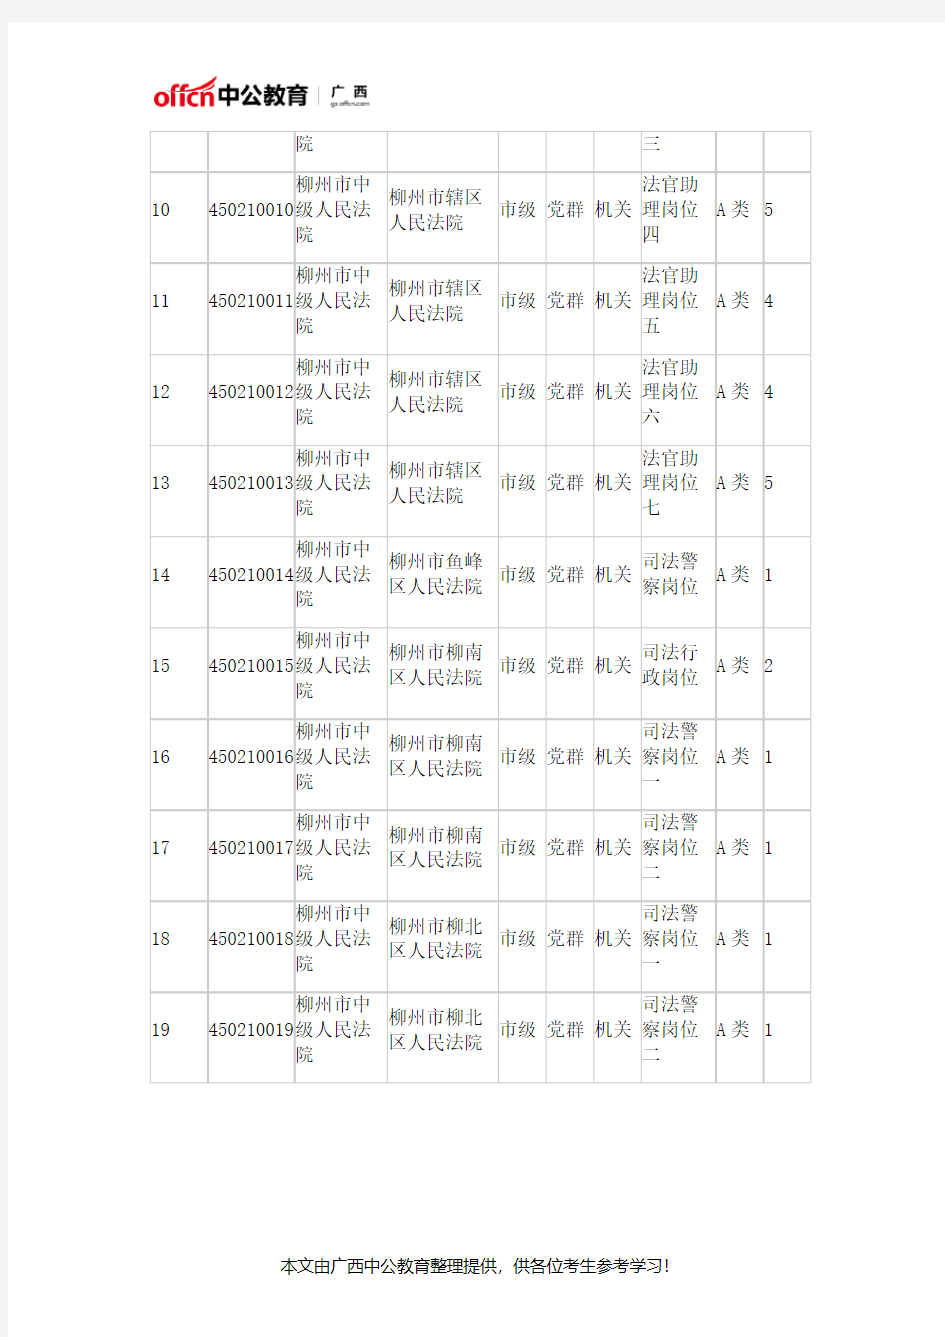 2019年广西柳州公务员考试职位表(272人)